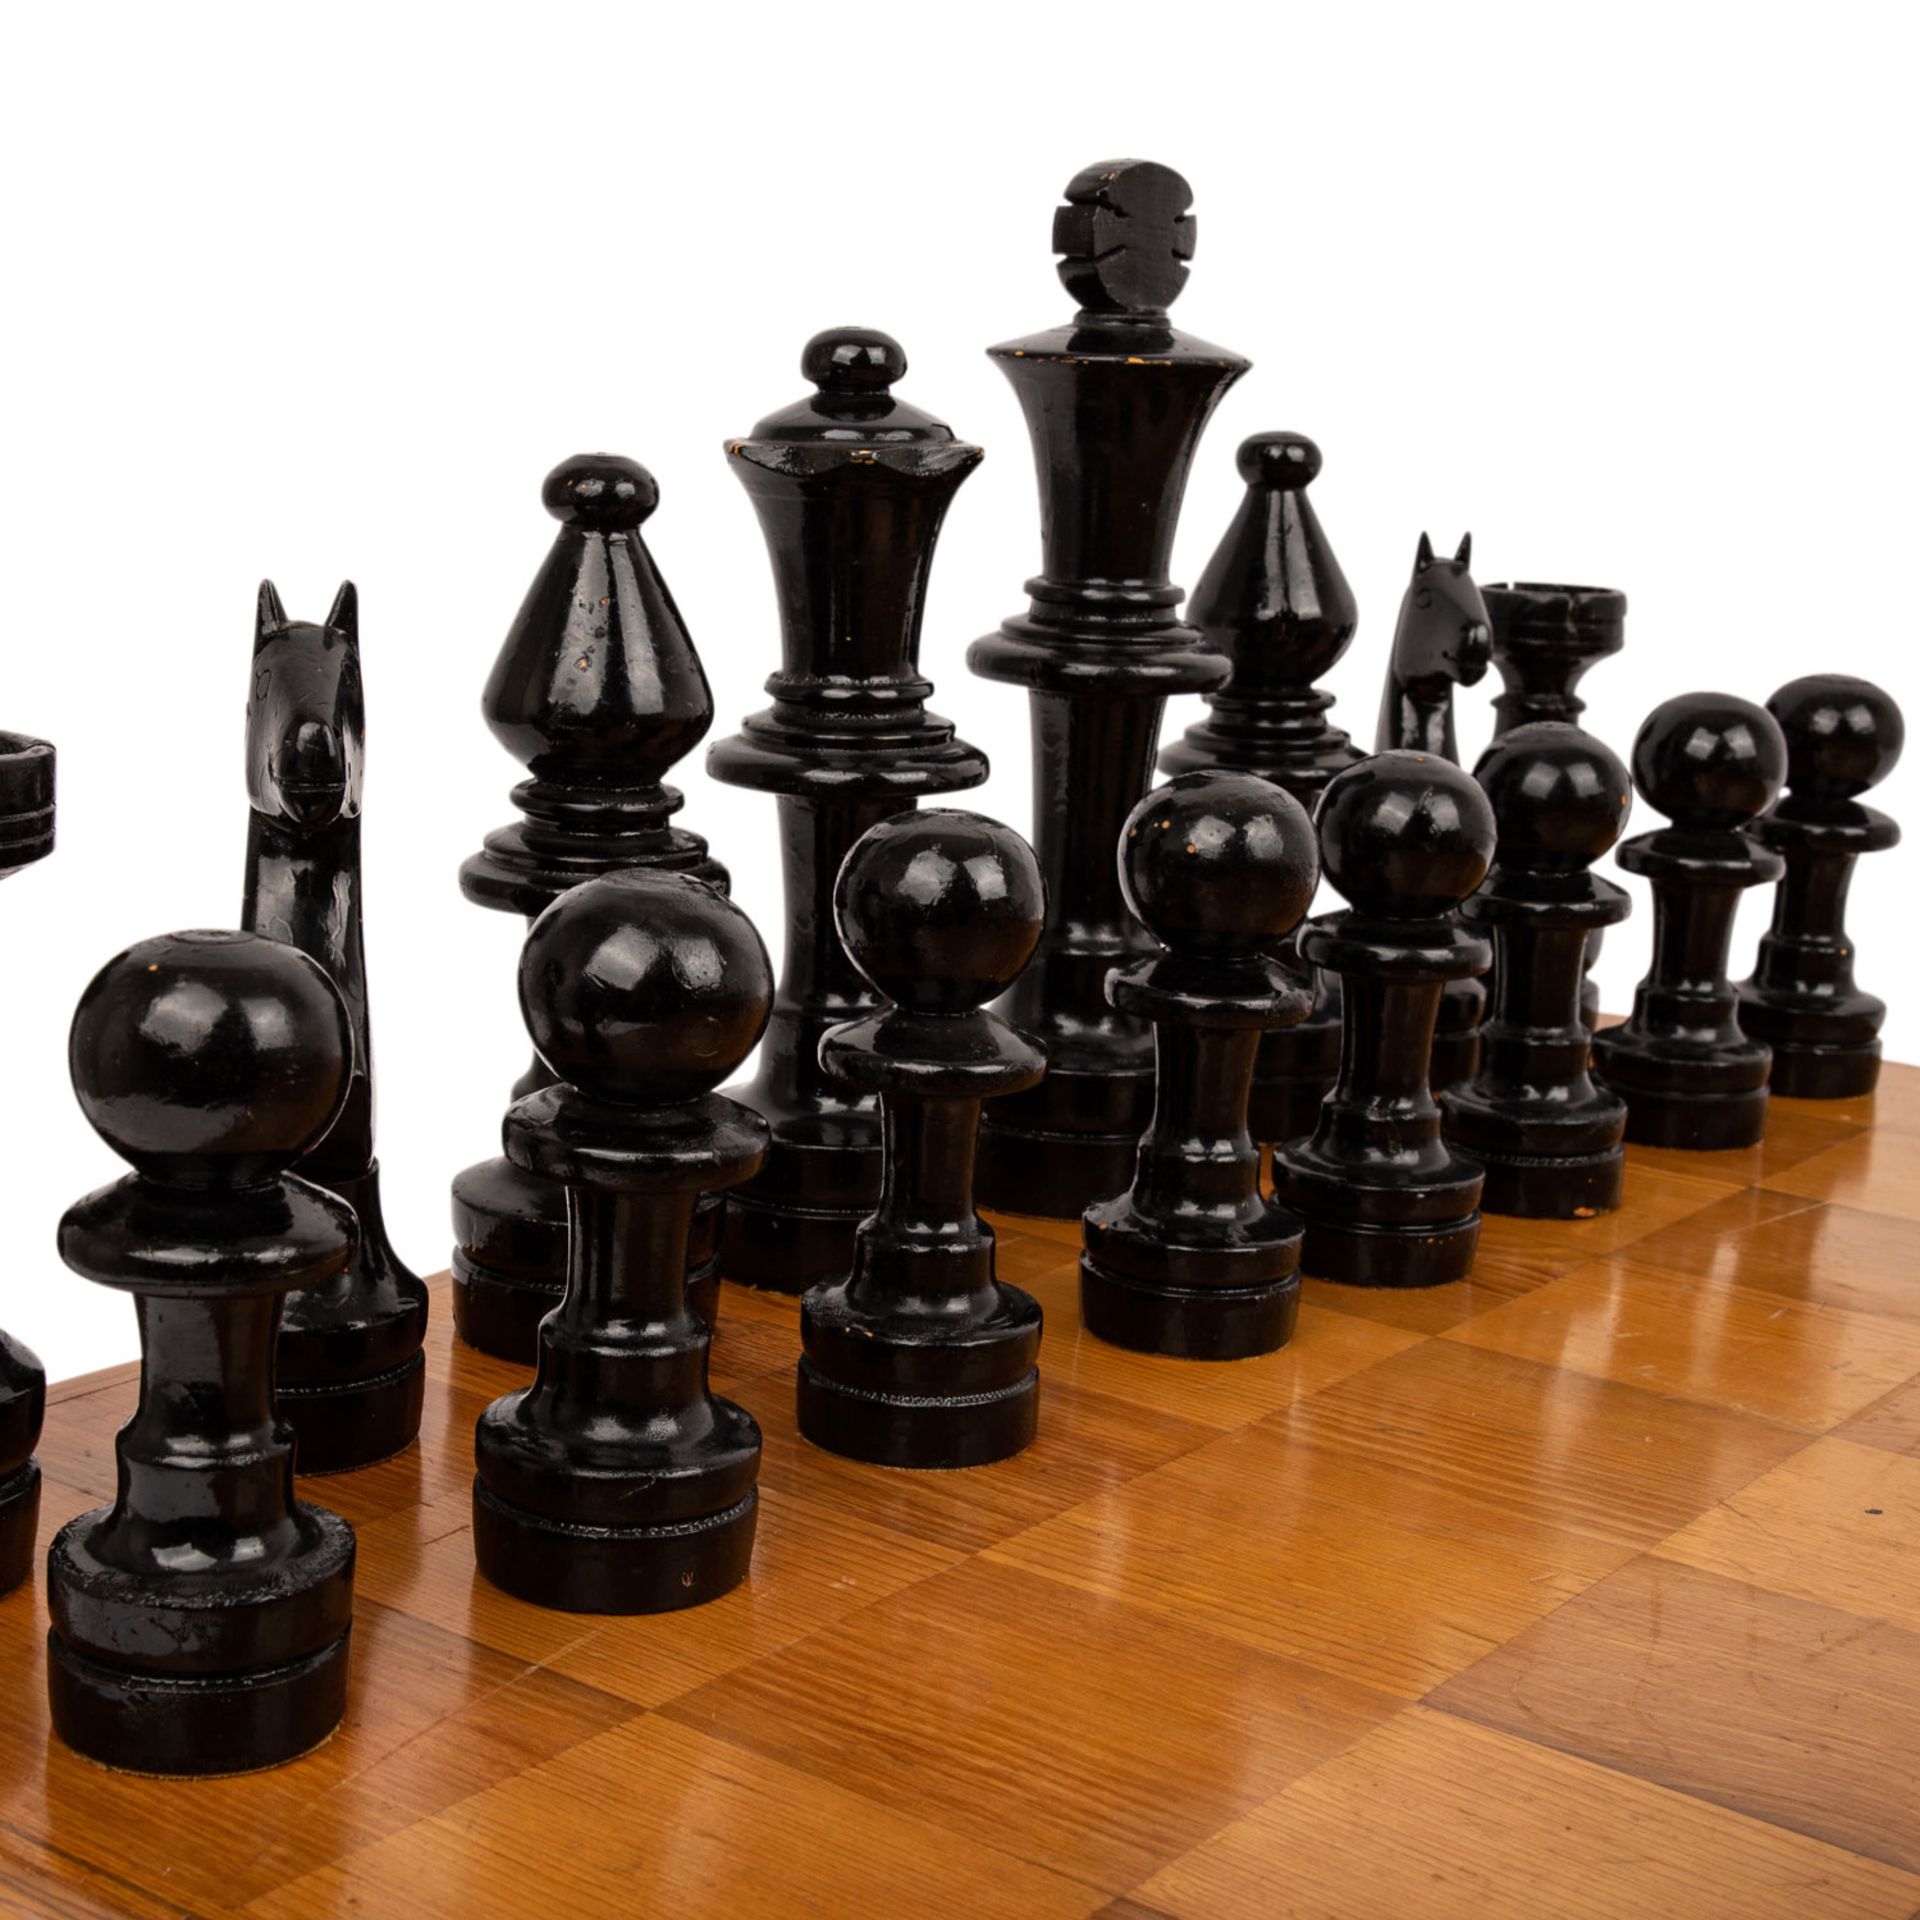 GROßES SCHACHSPIEL Rechteckkasten, darin kompletter Satz eines Schachspiels, die Figuren in Holz - Bild 2 aus 5